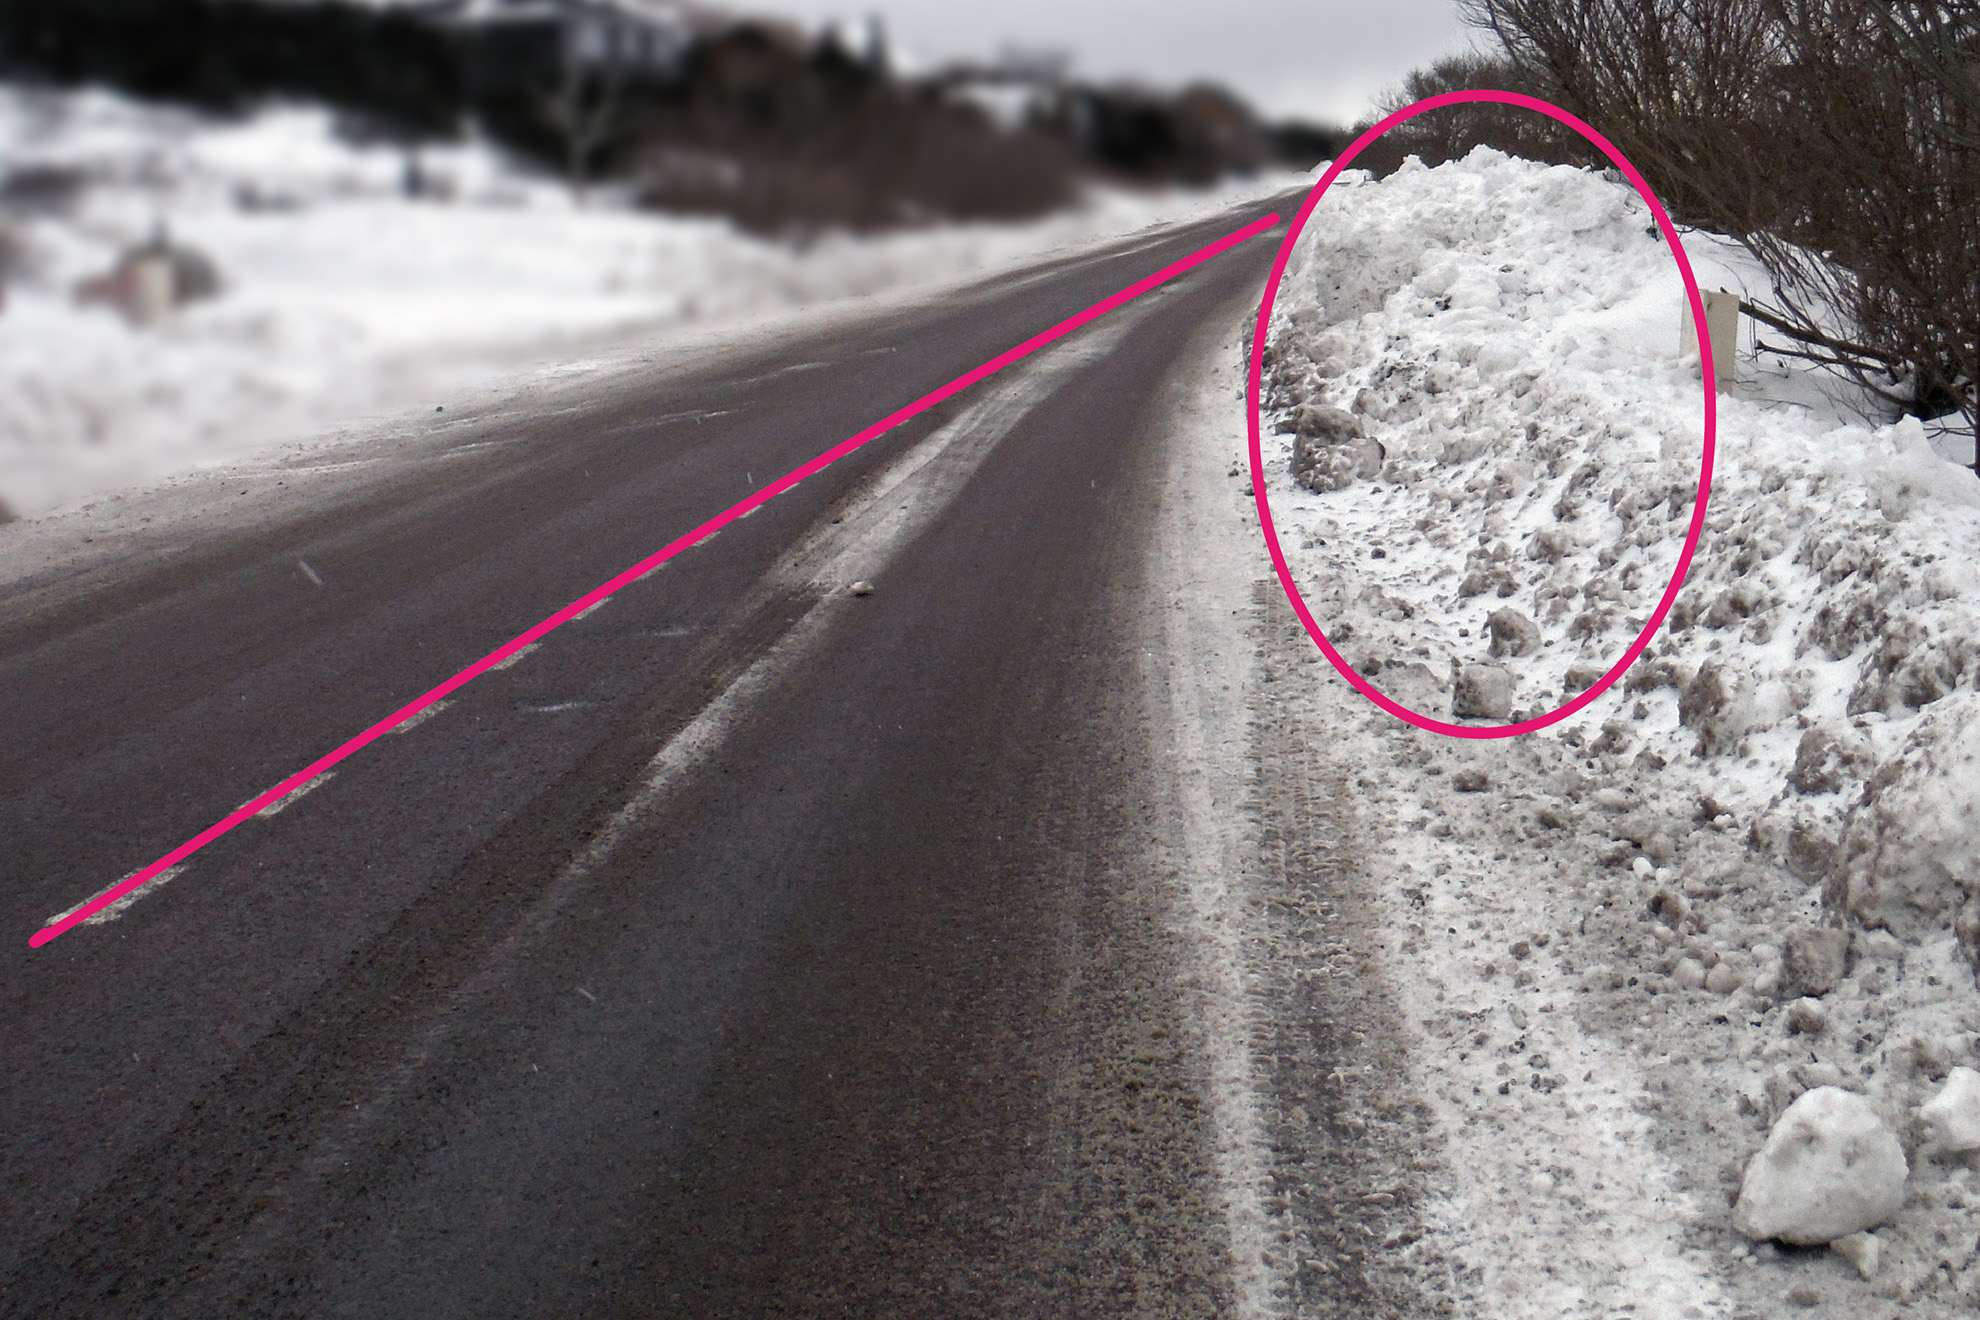 Le rétrécissement de la voie causé par la butte de neige oblige les automobilistes à faire un écart et franchir la ligne médiane, ce qui augmente les risques d'accident avec un véhicule venant à contre-sens.